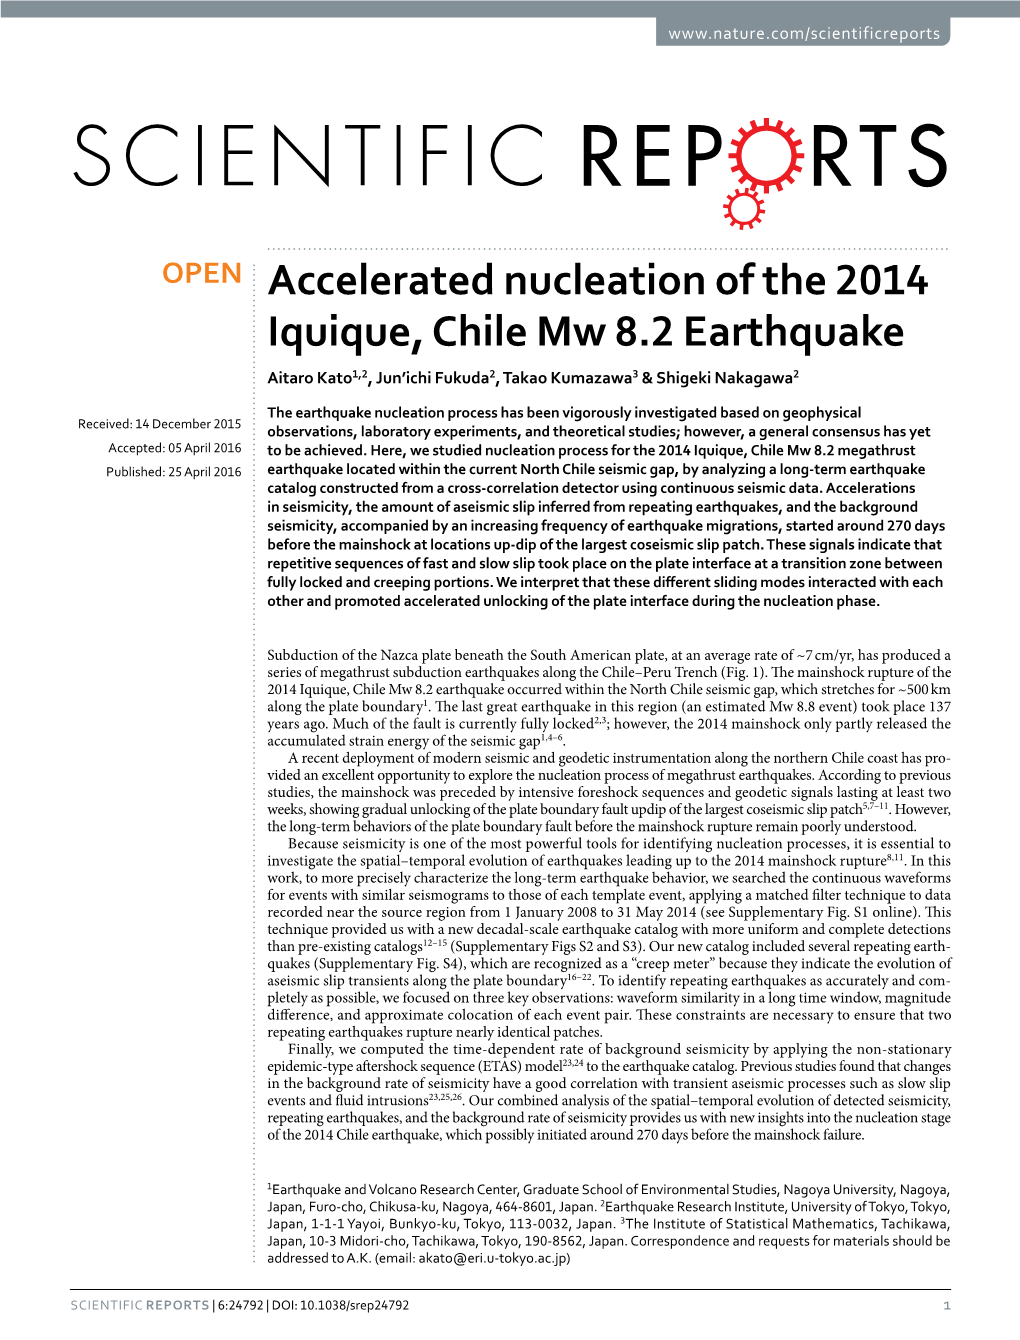 Accelerated Nucleation of the 2014 Iquique, Chile Mw 8.2 Earthquake Aitaro Kato1,2, Jun’Ichi Fukuda2, Takao Kumazawa3 & Shigeki Nakagawa2